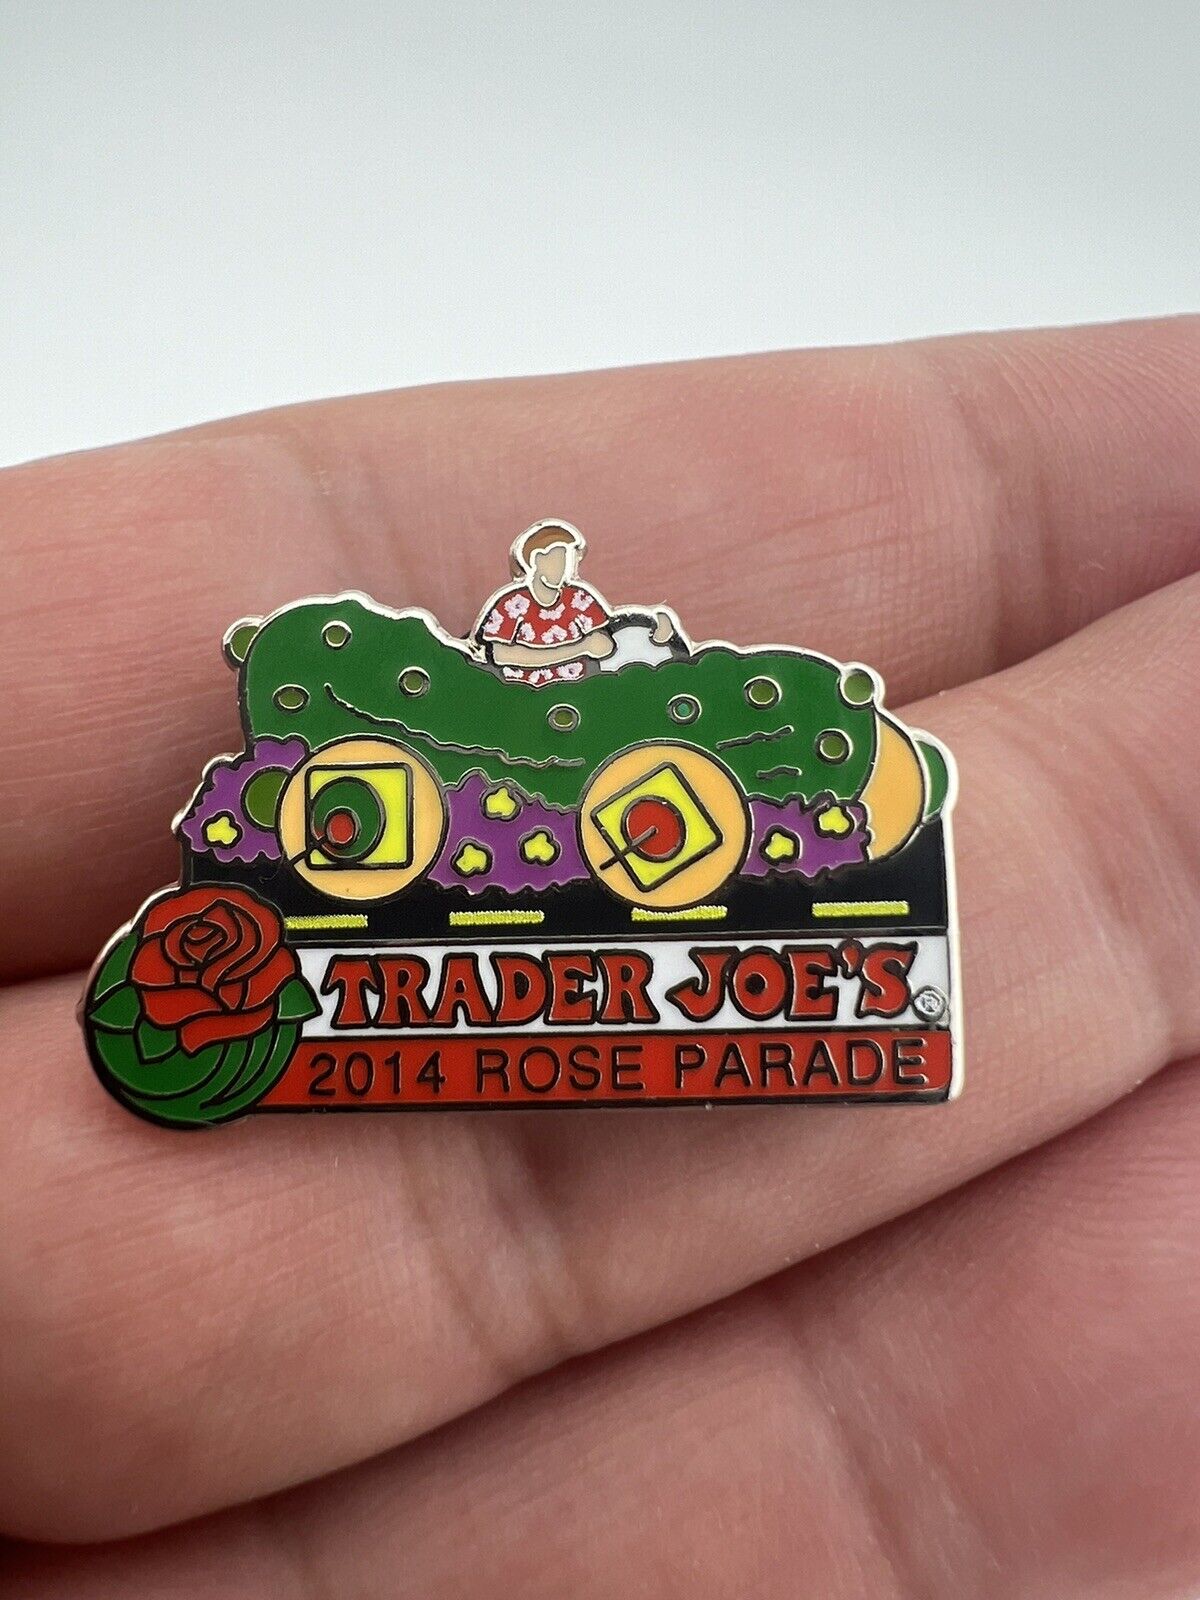 Trader Joe’s 2014 Rose Parade Pickle Car Float Collectible Pin